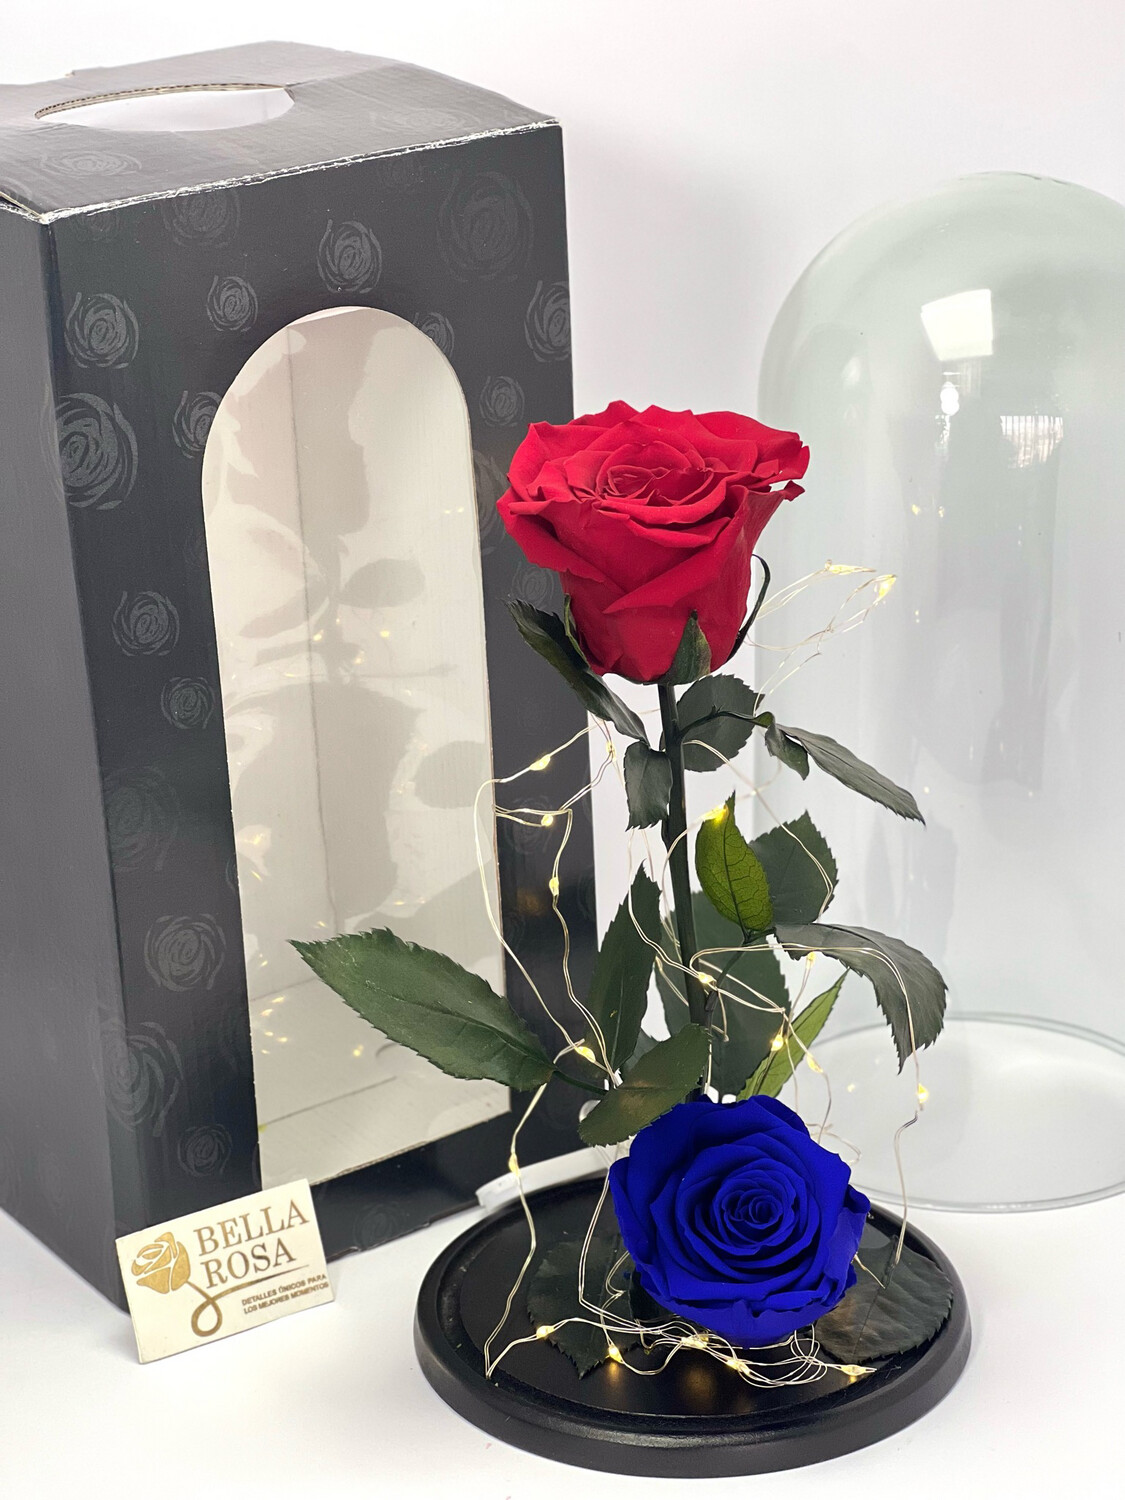 Cúpula de cristal de 27 cm de alto con 2 rosas preservadas XL